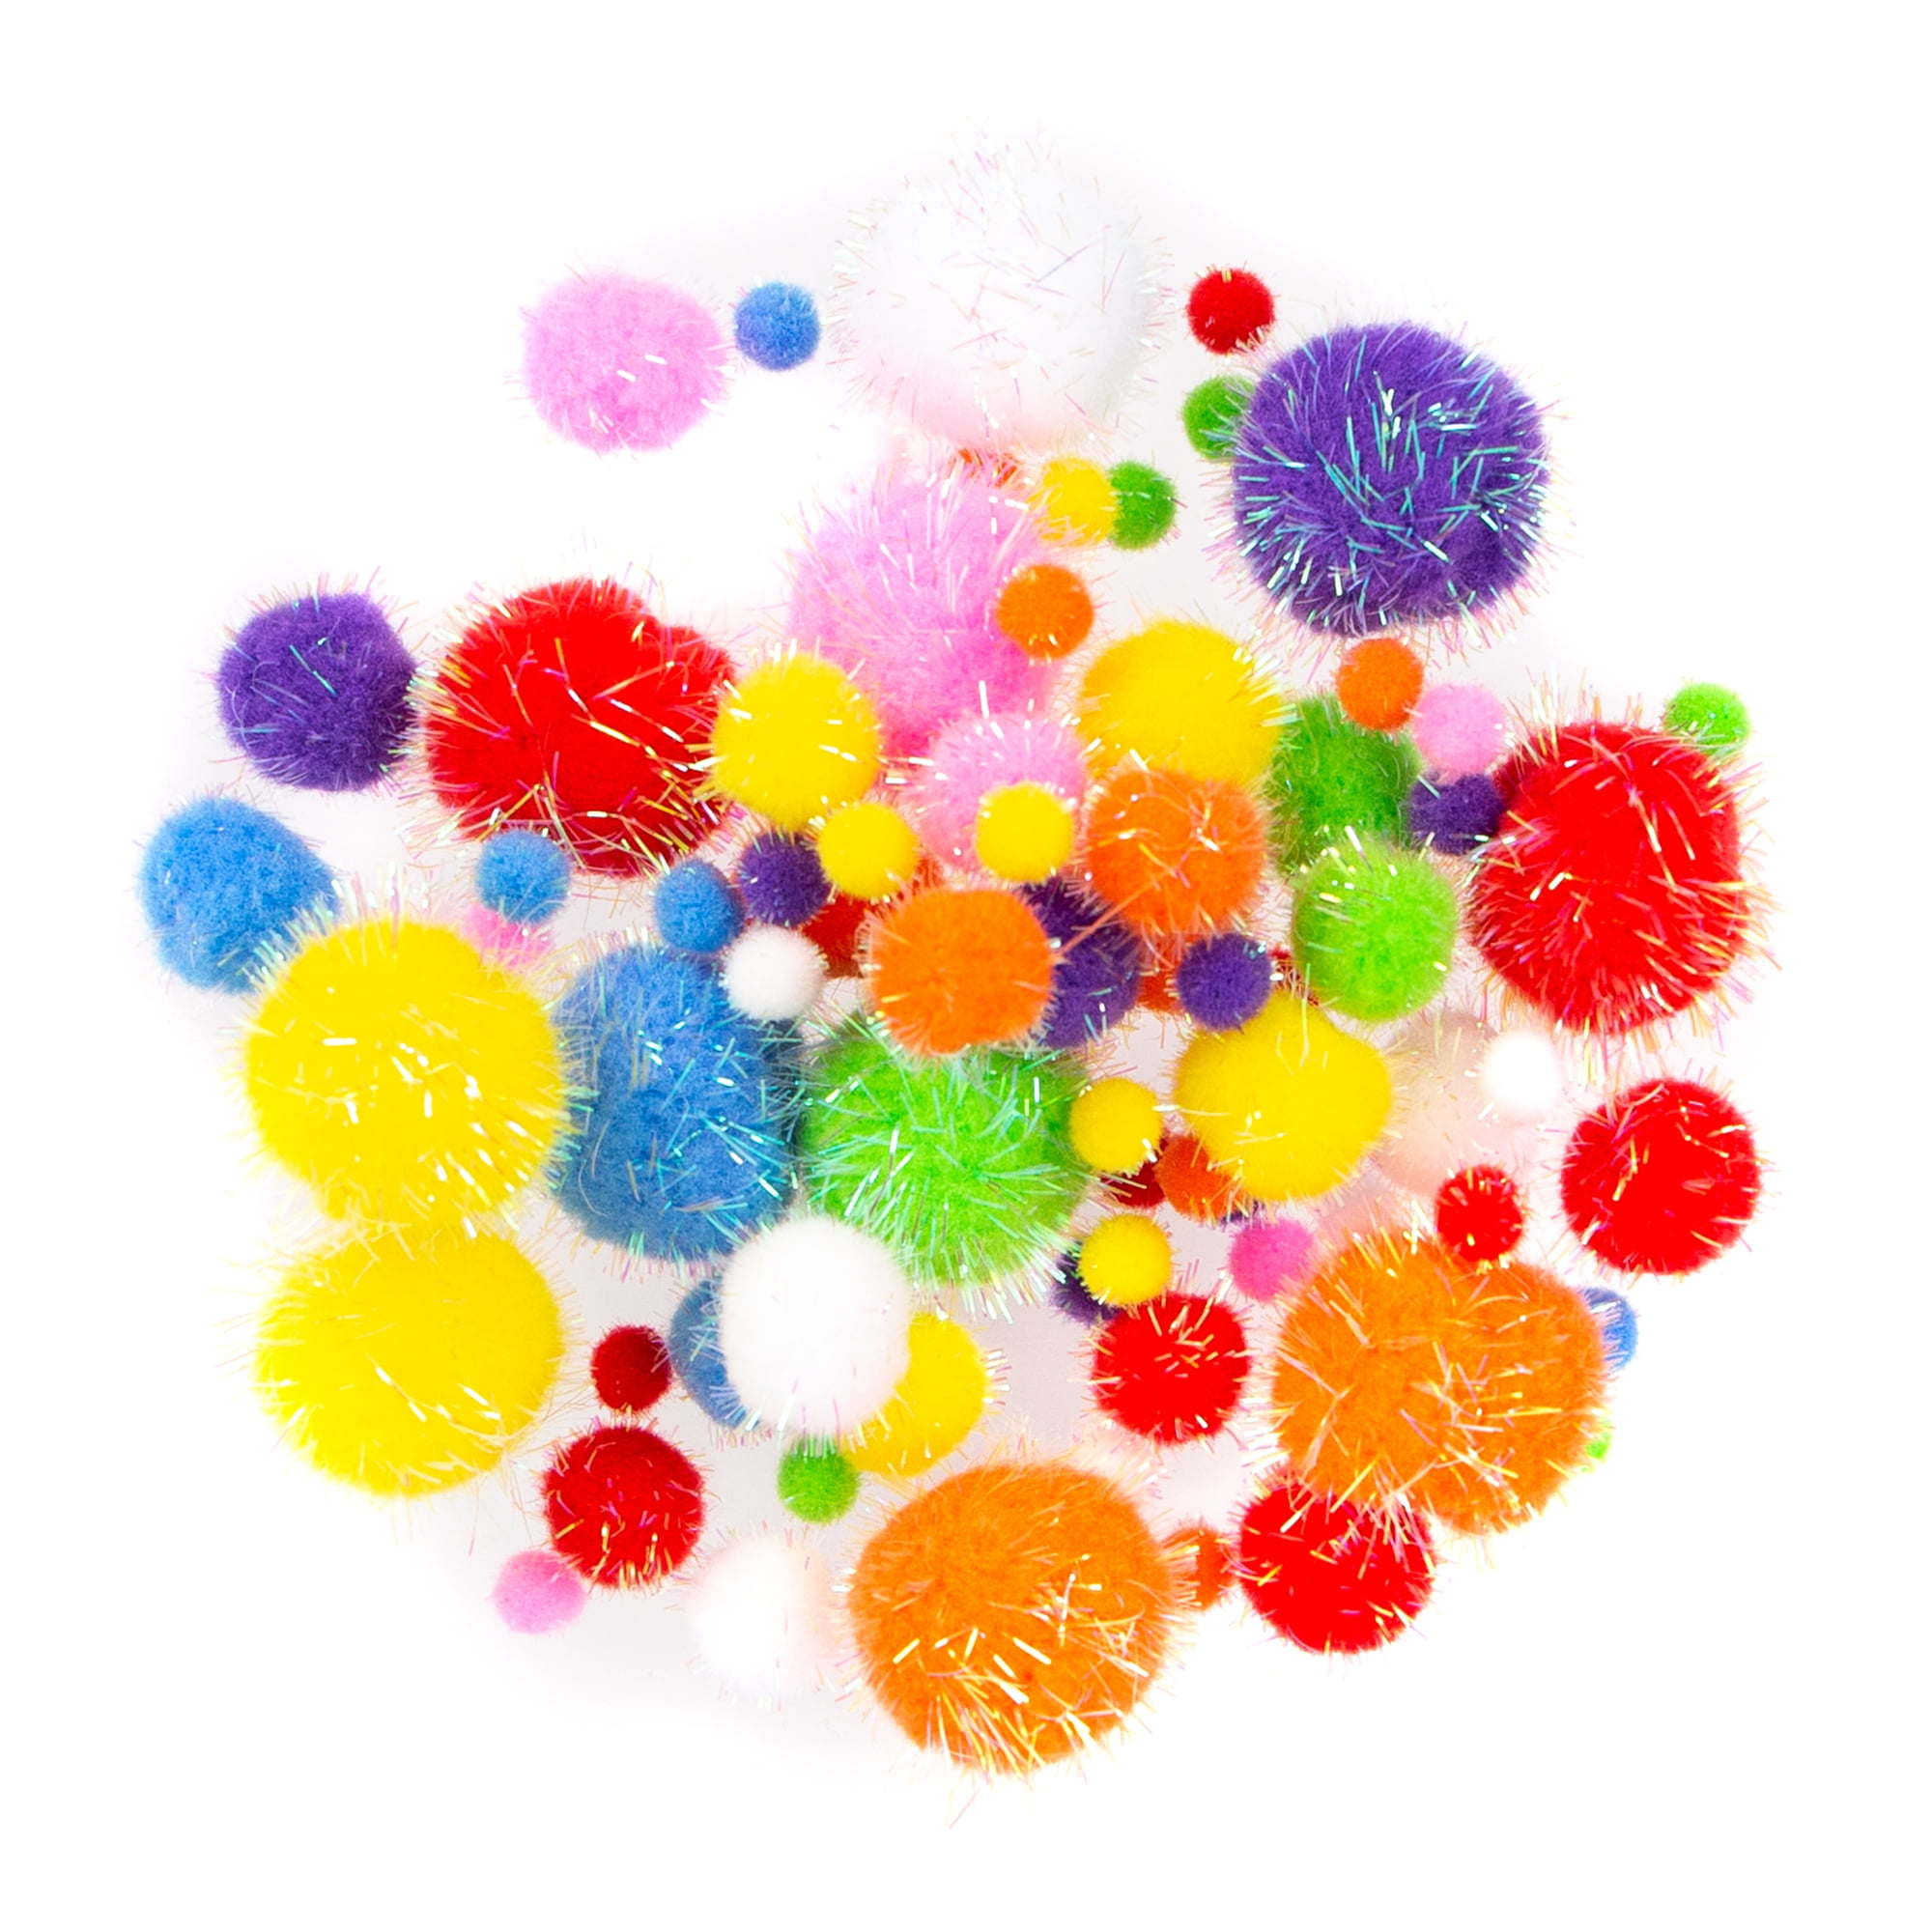 Micro Sticky Pom Pom Balls - 144 Count: Rebecca's Toys & Prizes